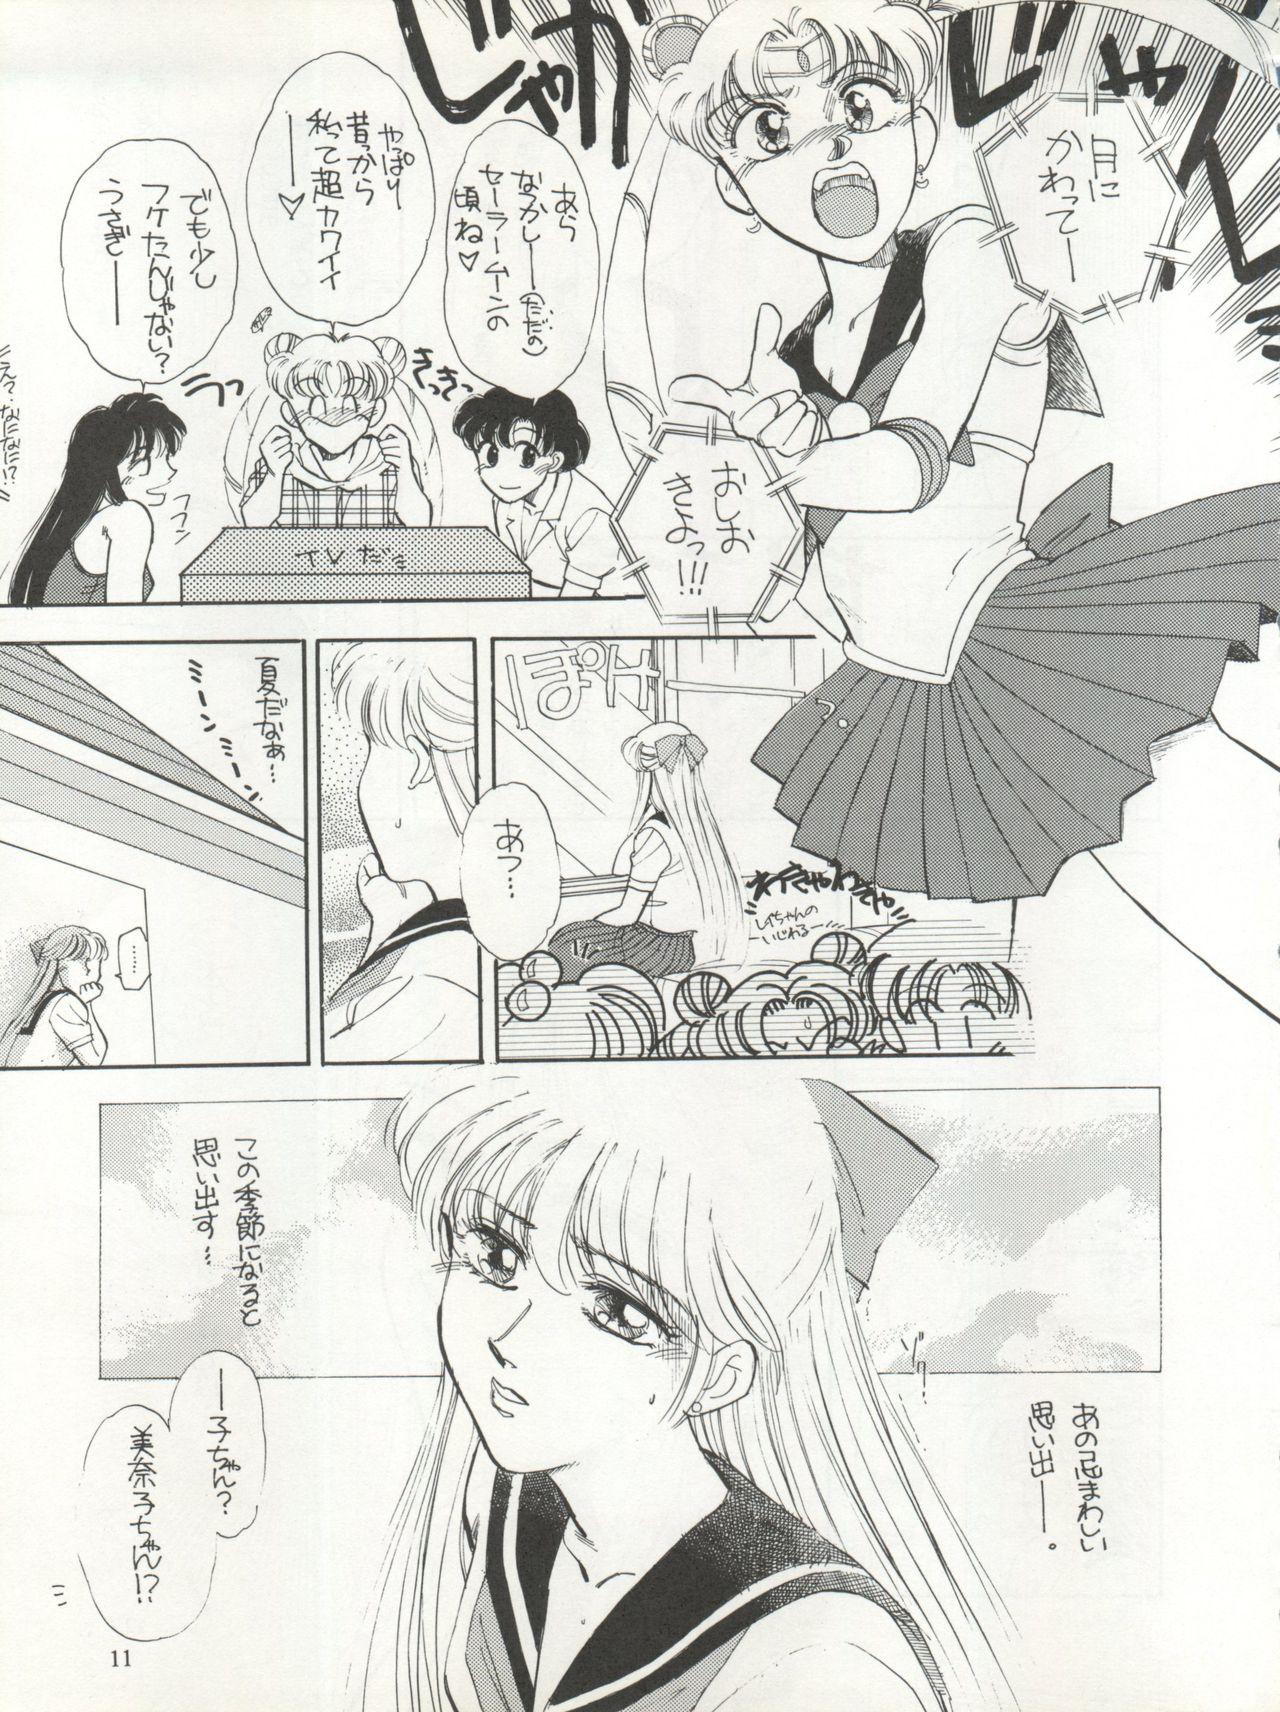 Tia Sekai Seifuku Sailor Fuku 5 - Sailor moon Class Room - Page 9